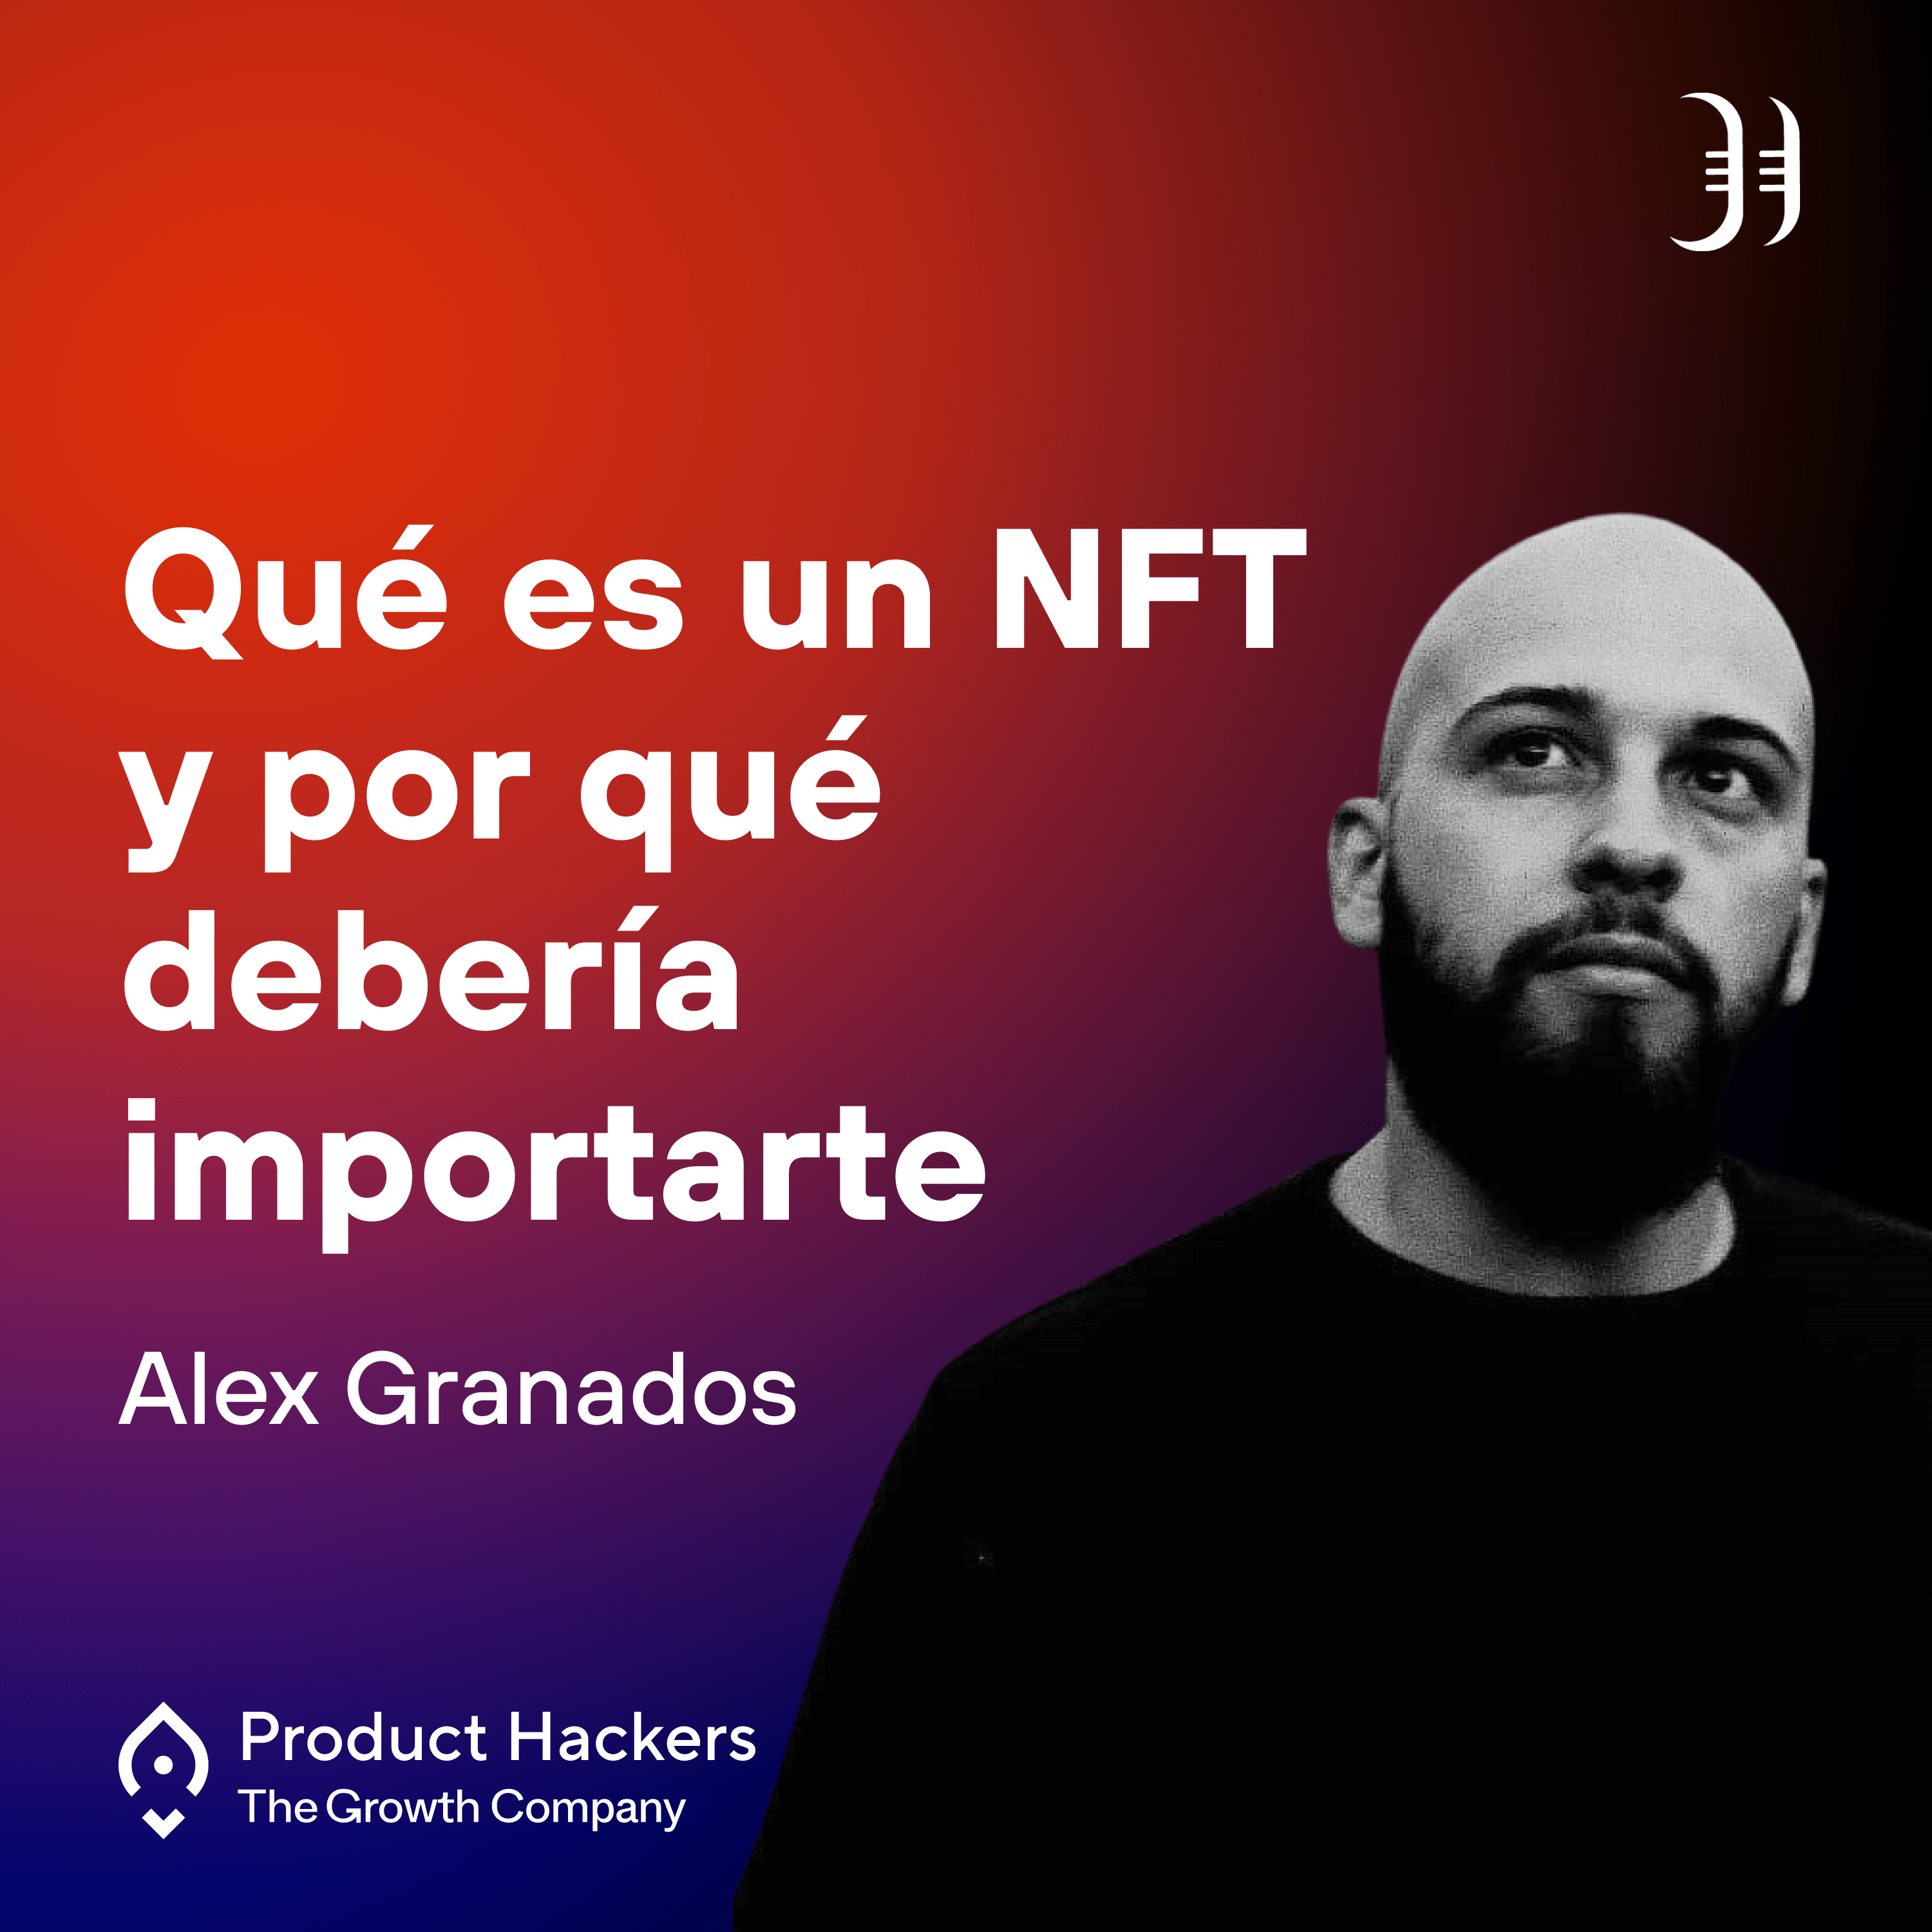 Qué es un NFT y por qué debería importarte con Alex Granados